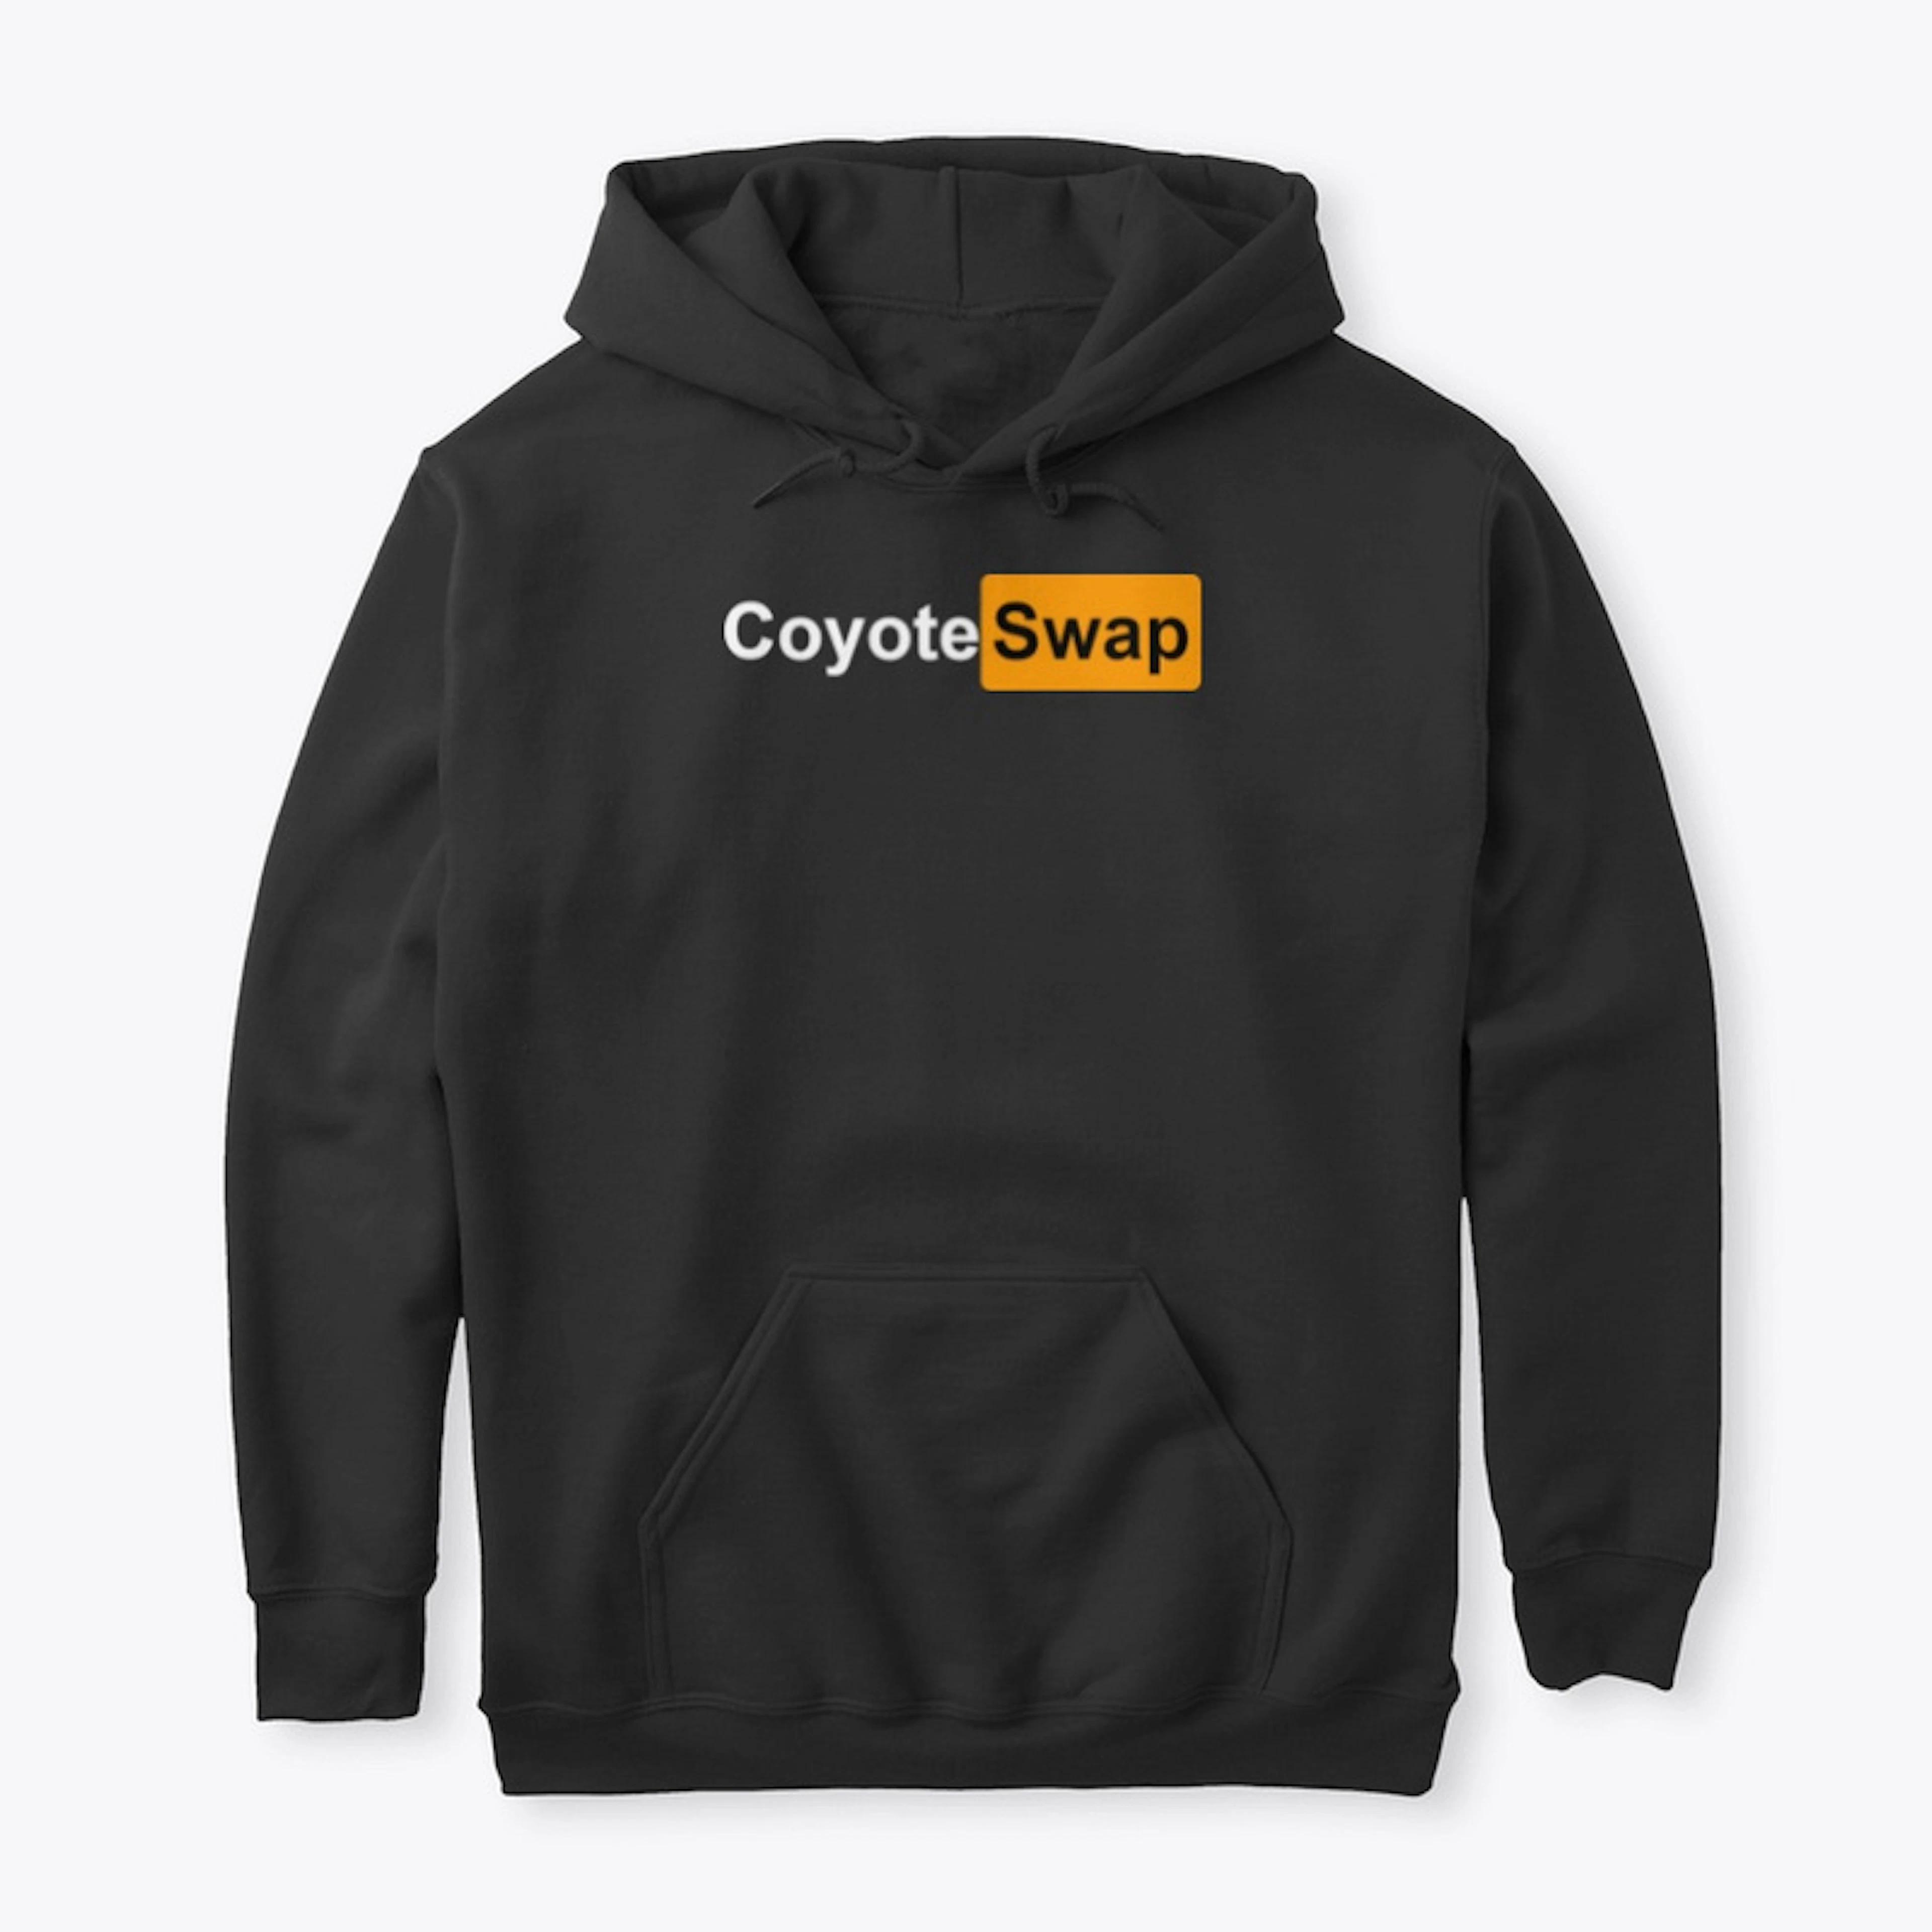 Coyote Swap 